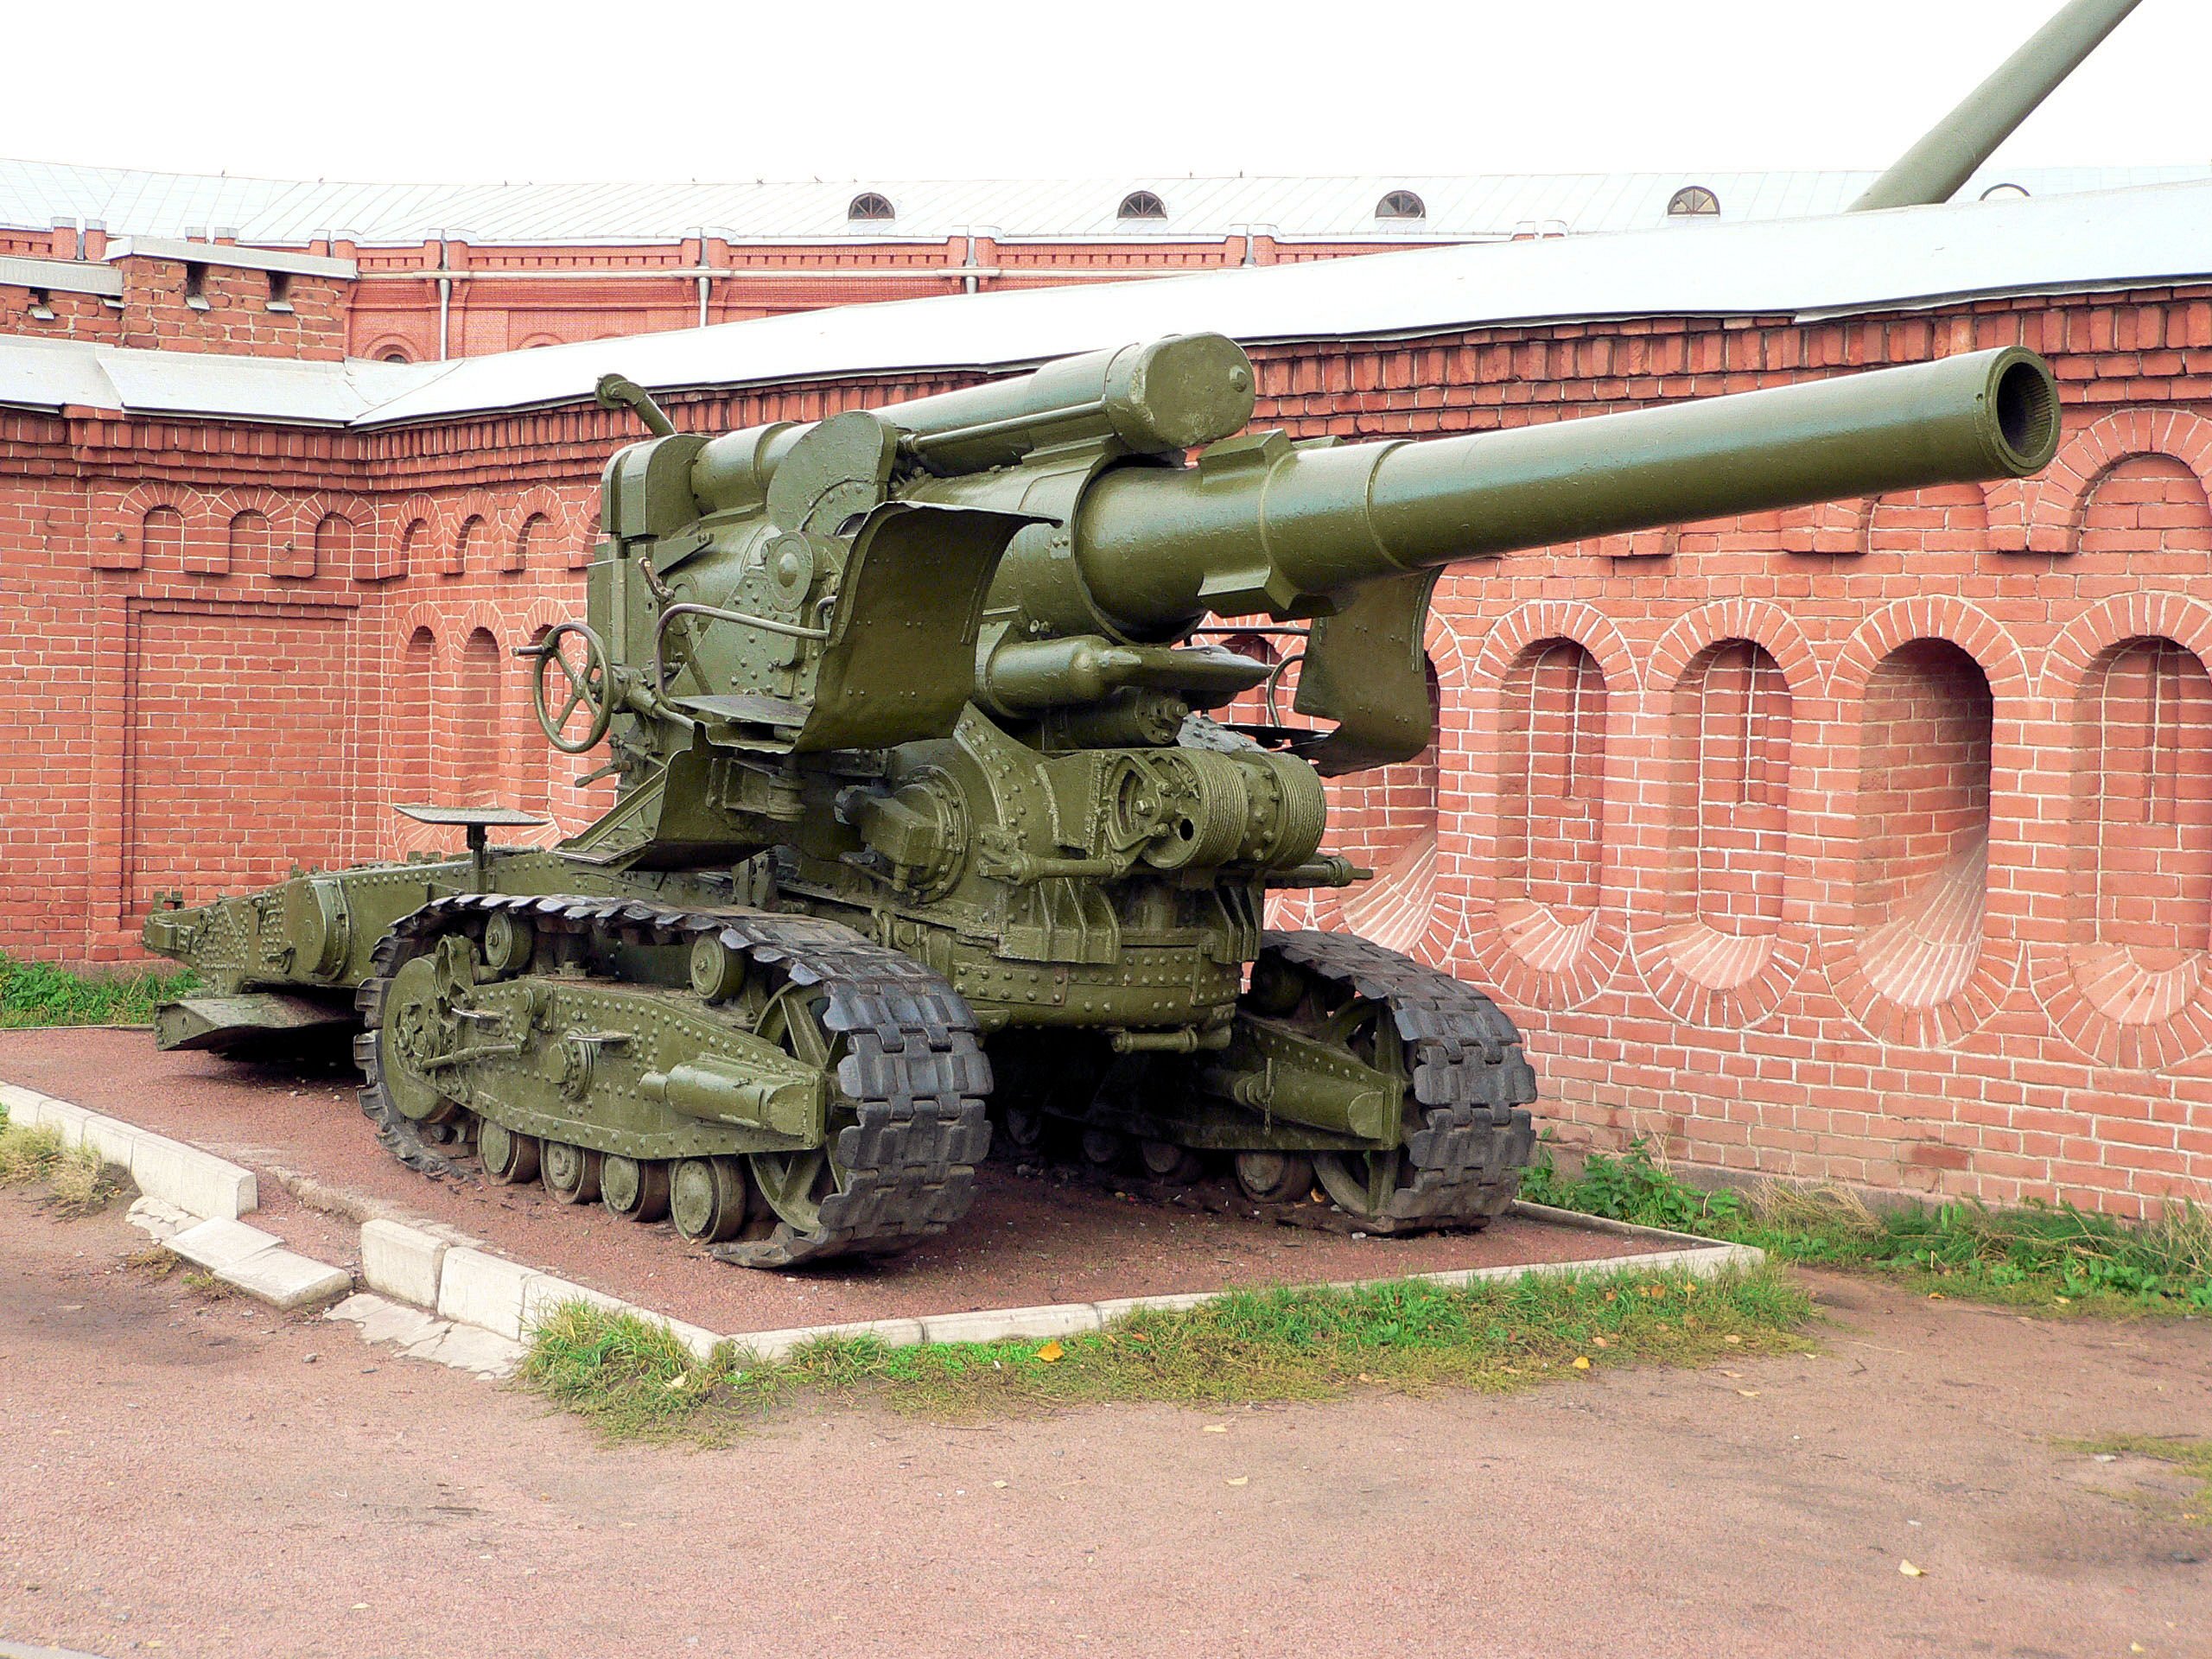 Б ввв. Сталинская Кувалда 203-мм гаубица. Советская 203-мм. Гаубица б-4. Сталинская Кувалда 203-мм гаубица б-4. 2с7м малка.